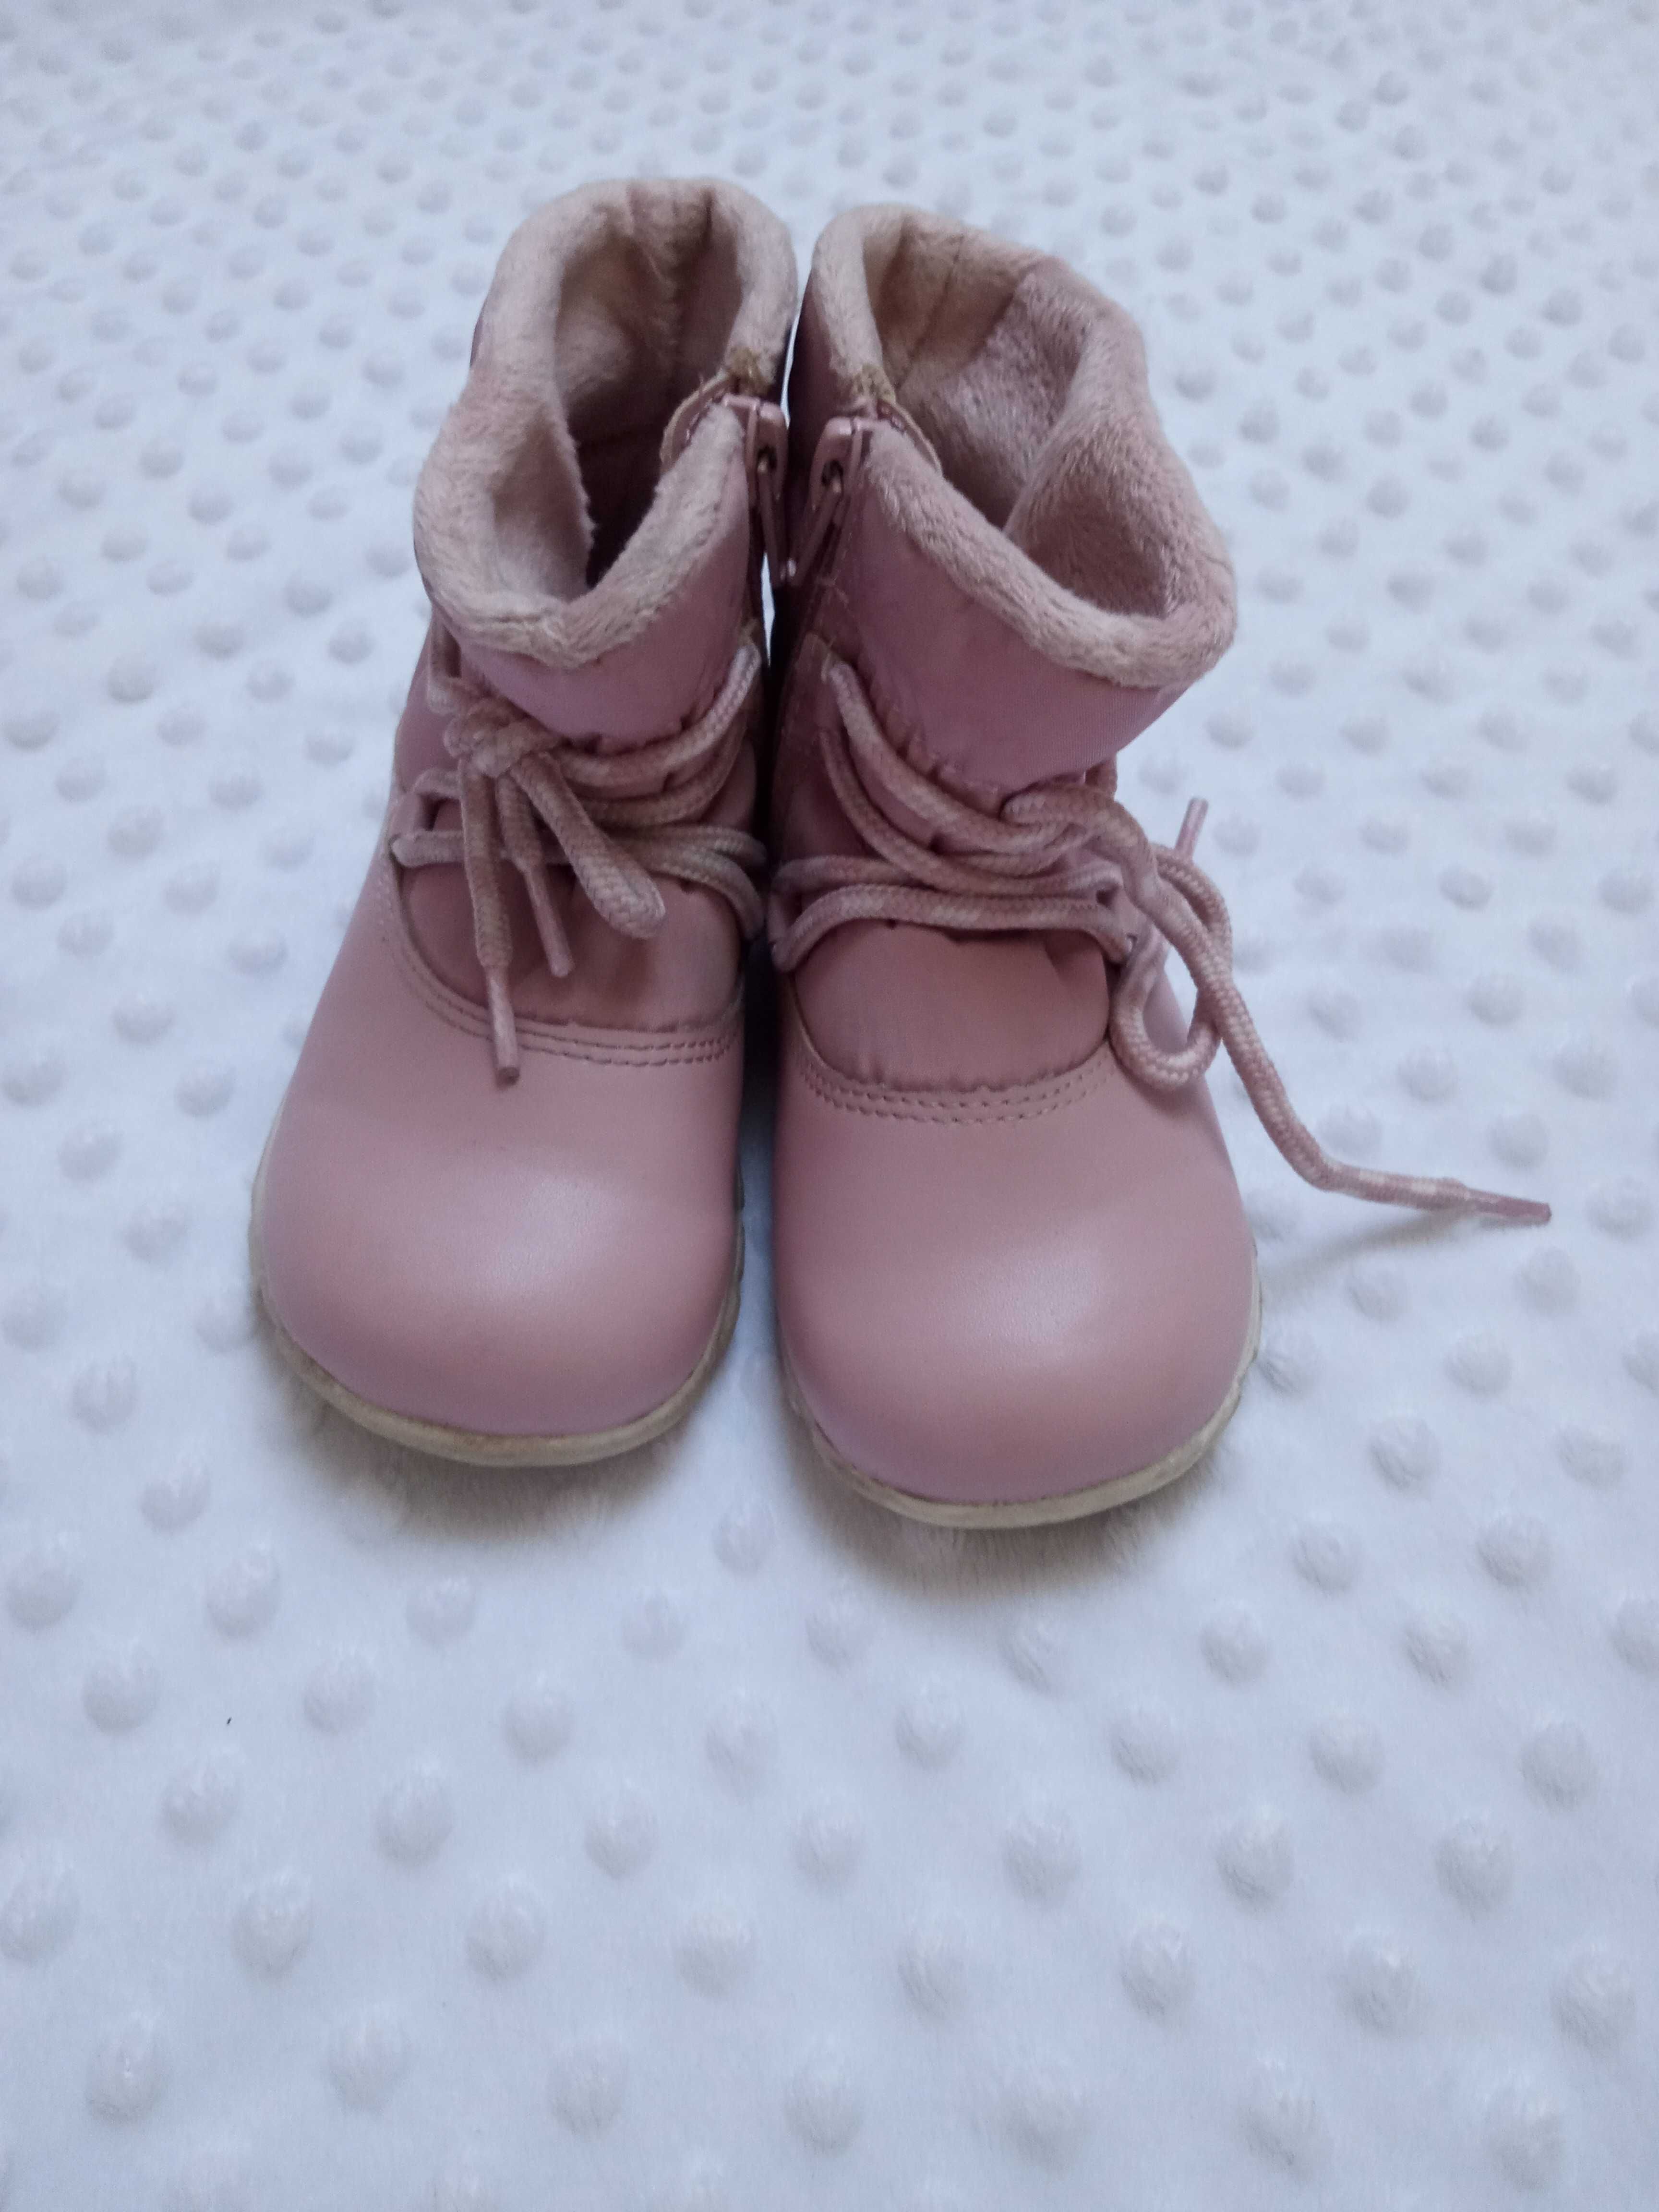 Kozaki kozaczki buciki dla dziewczynki zimowe różowe r 26 H&m